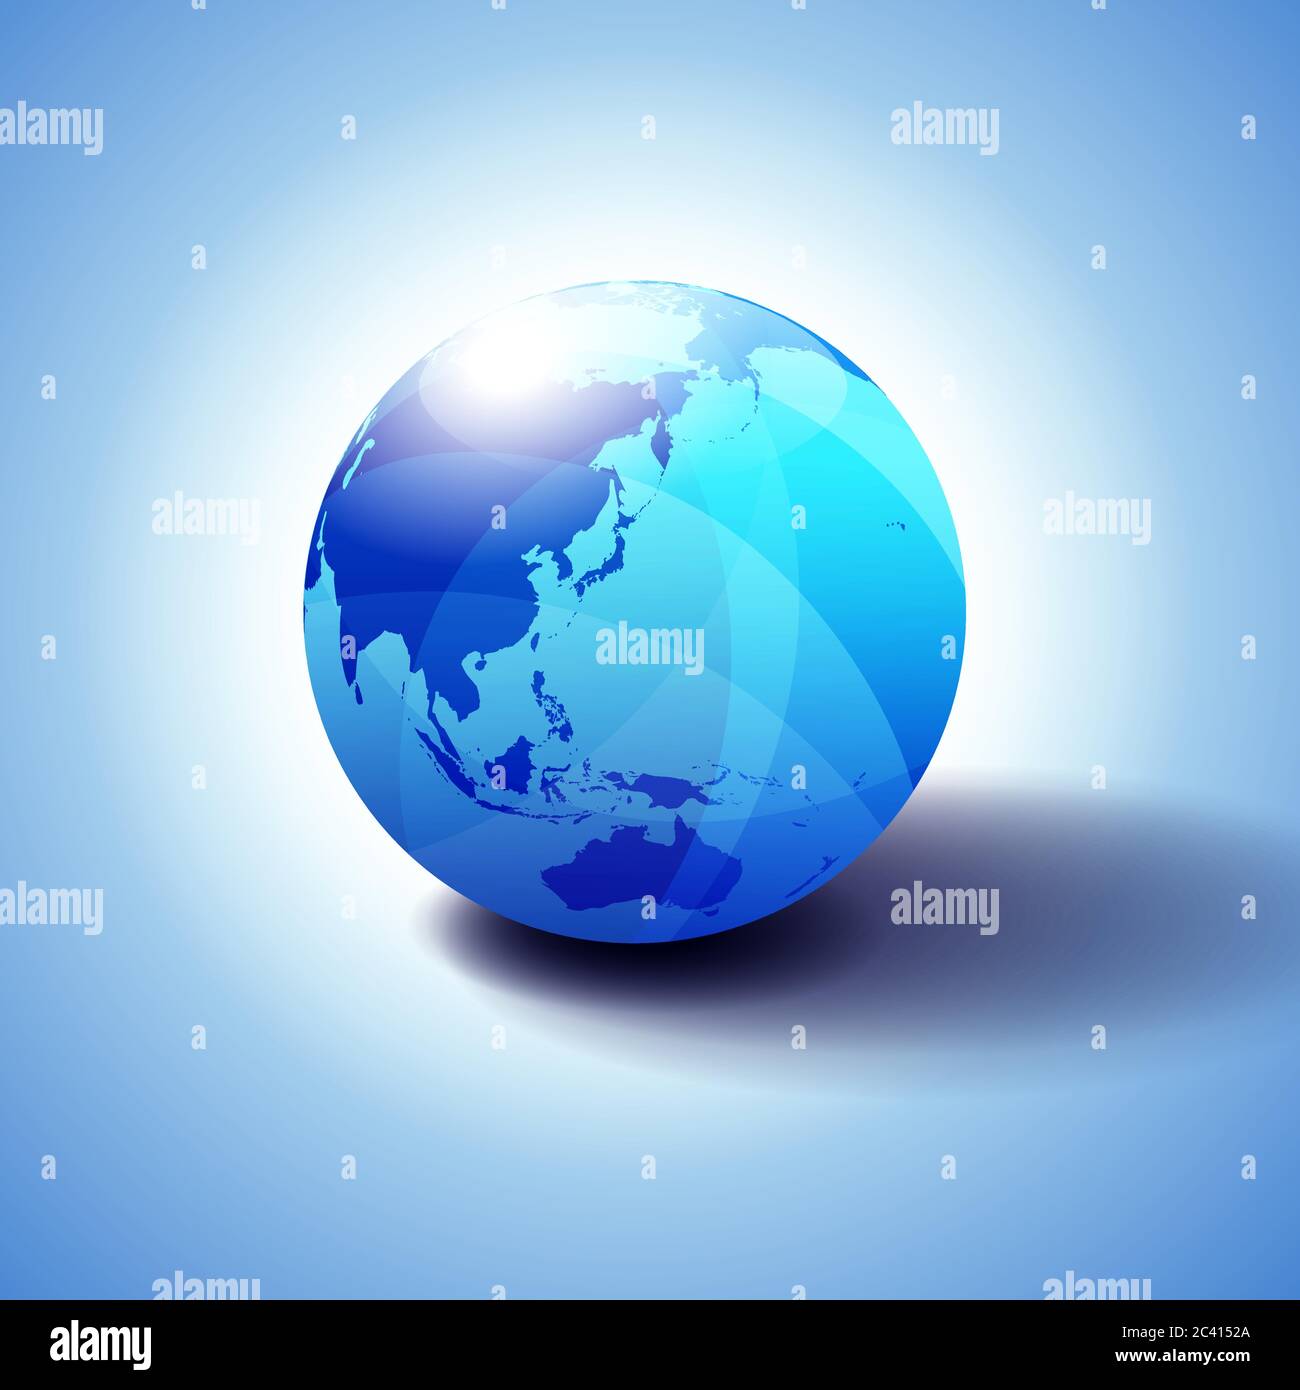 Cina, Giappone, Malesia, Thailandia, Indonesia, Australia, Asia, icona globo 3D illustrazione, lucida, sfera lucida con mappa globale in blu sottile dare Illustrazione Vettoriale